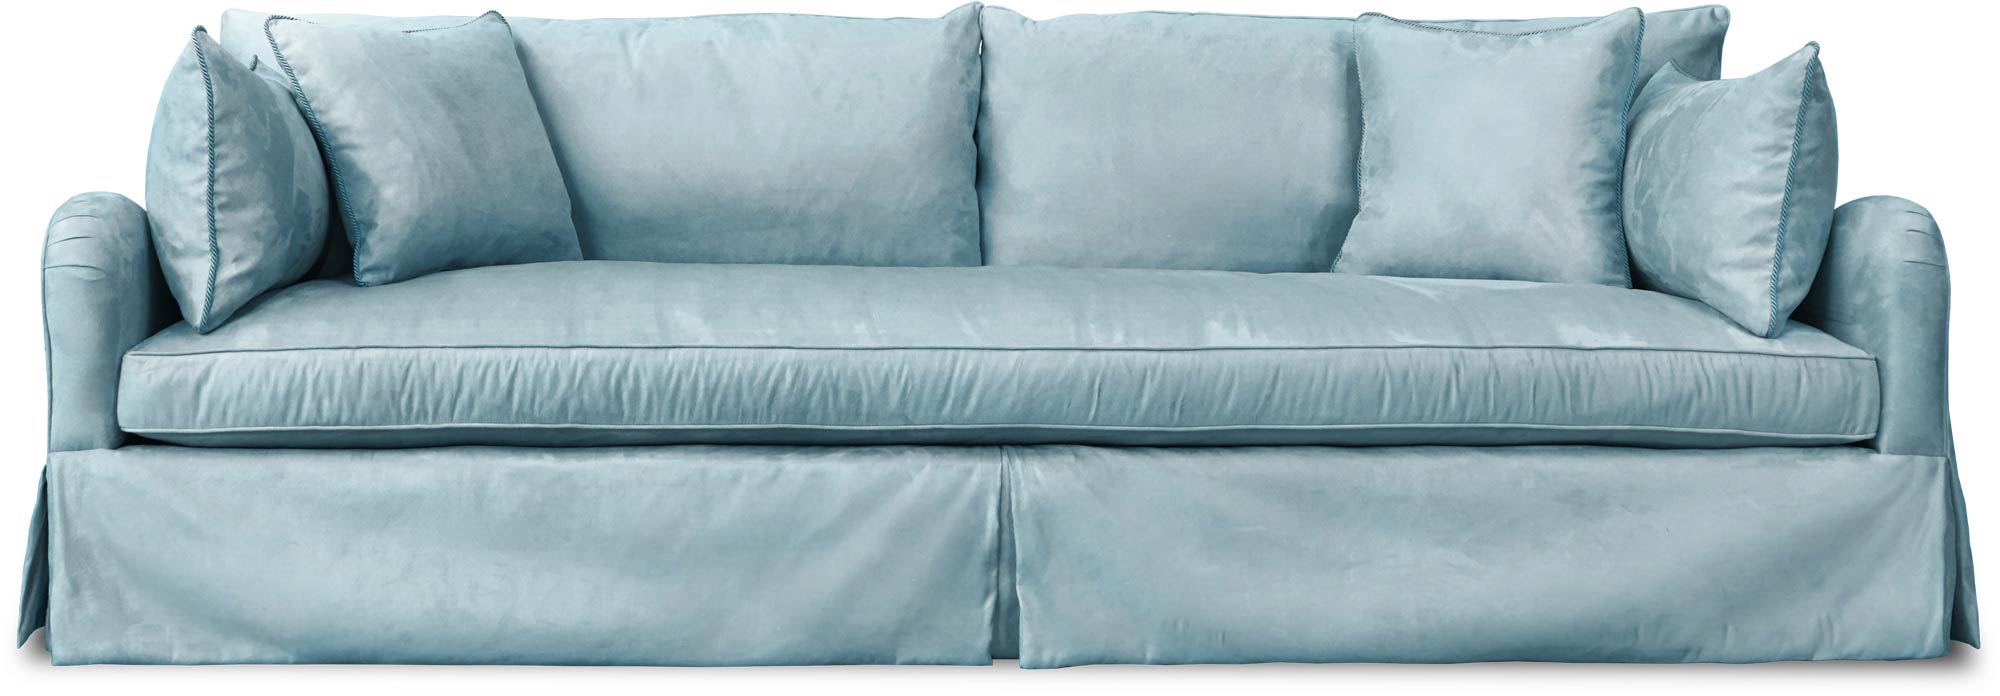 110x48 Bestie sofa in Thompson Stream blue velvet